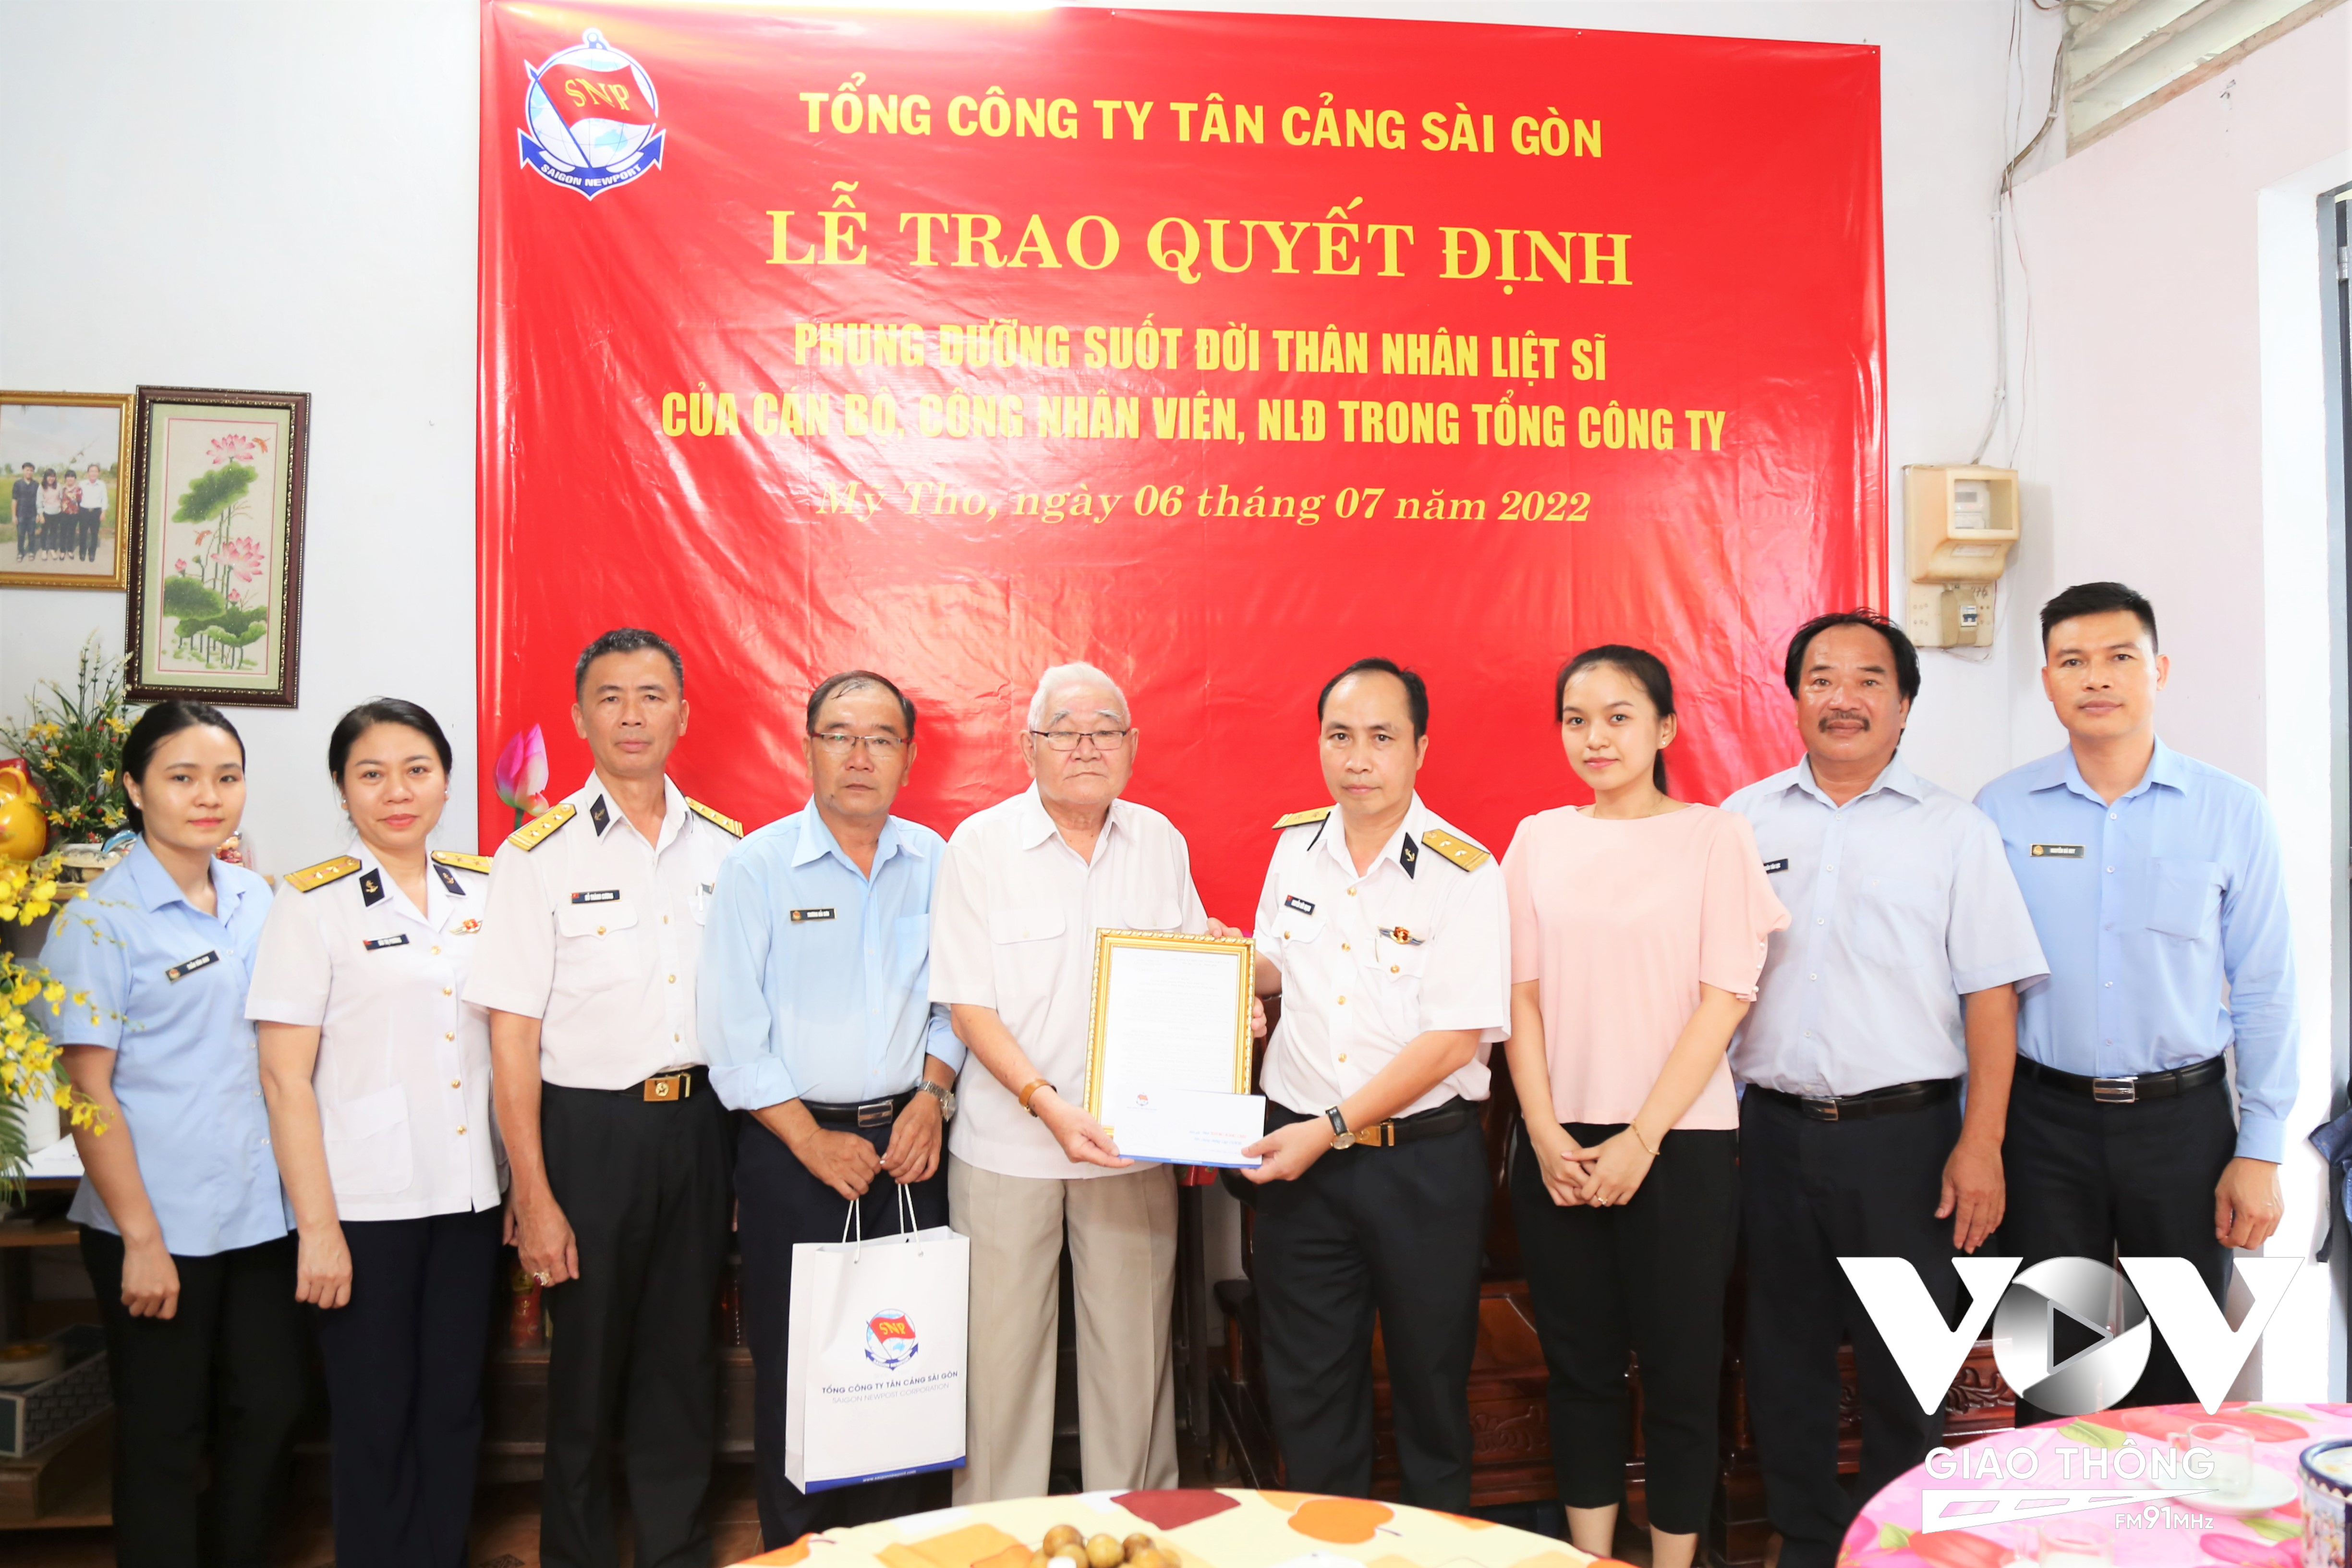 Trung tá Nguyễn Hữu Mạnh (người thứ tư bên phải), Phó Chủ nhiệm Chính trị TCT Tân Cảng Sài Gòn trao quyết định phụng dưỡng ông Trương Hoàng Châu.